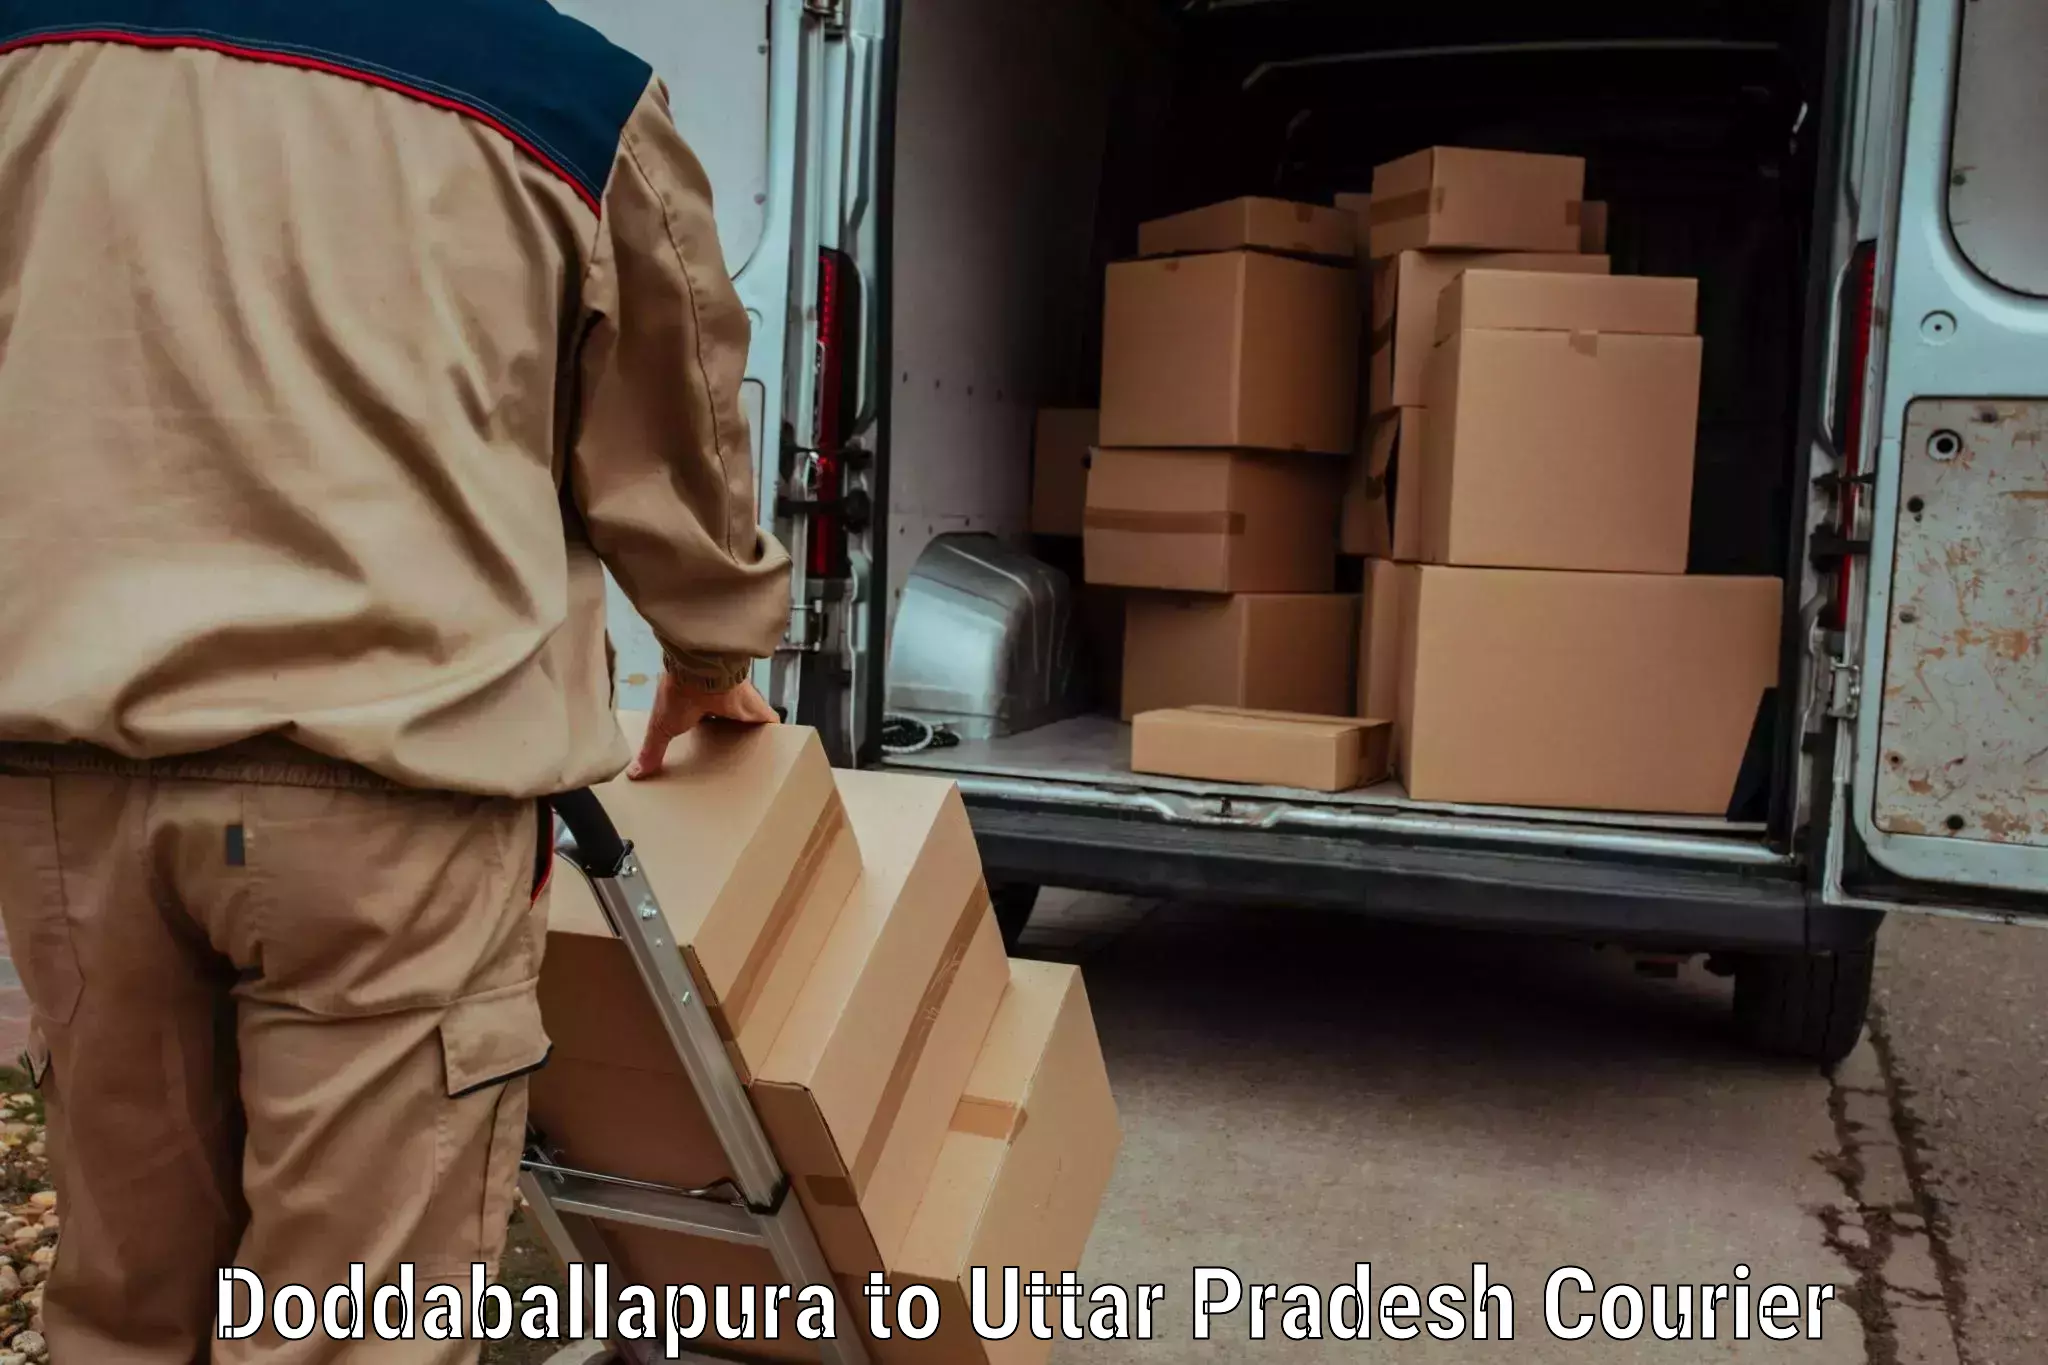 Fragile item shipping in Doddaballapura to Ambedkar Nagar